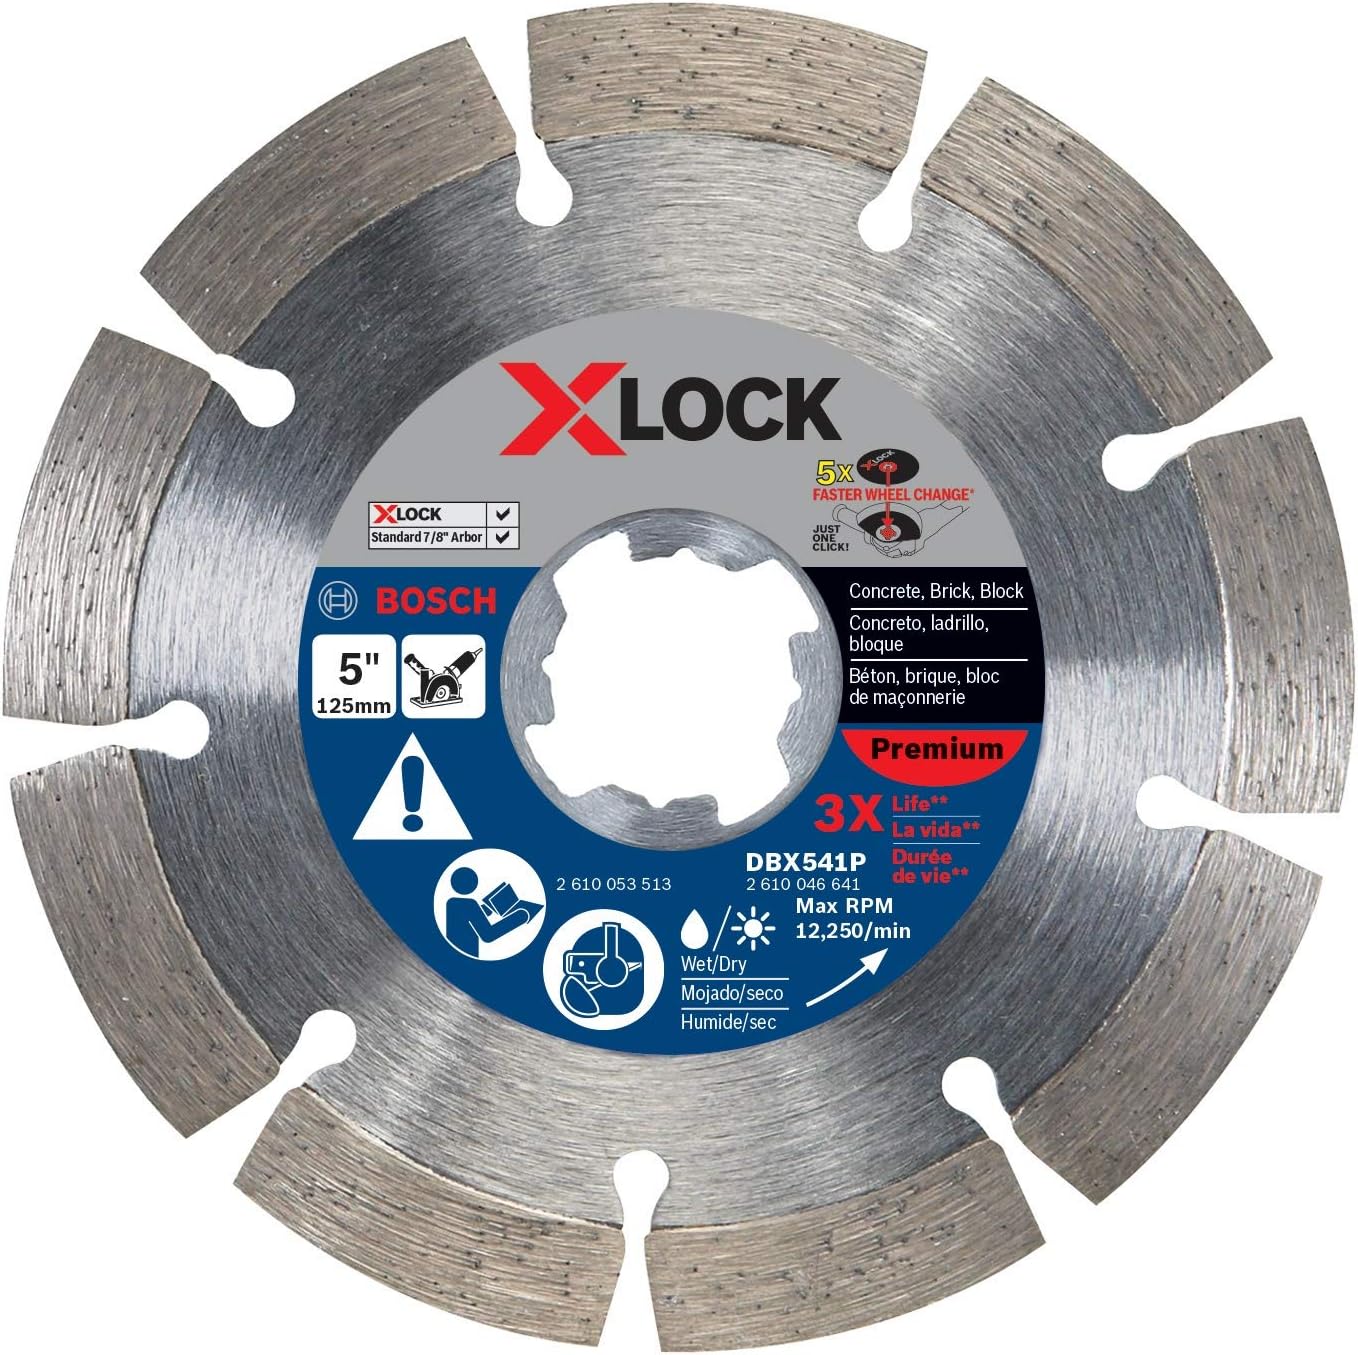 BOSCH DBX541P 5 In. X-LOCK Premium Segmented Rim Diamond Blade Compatible with 7/8 In. Arbor for Application in Concrete, Brick, Block